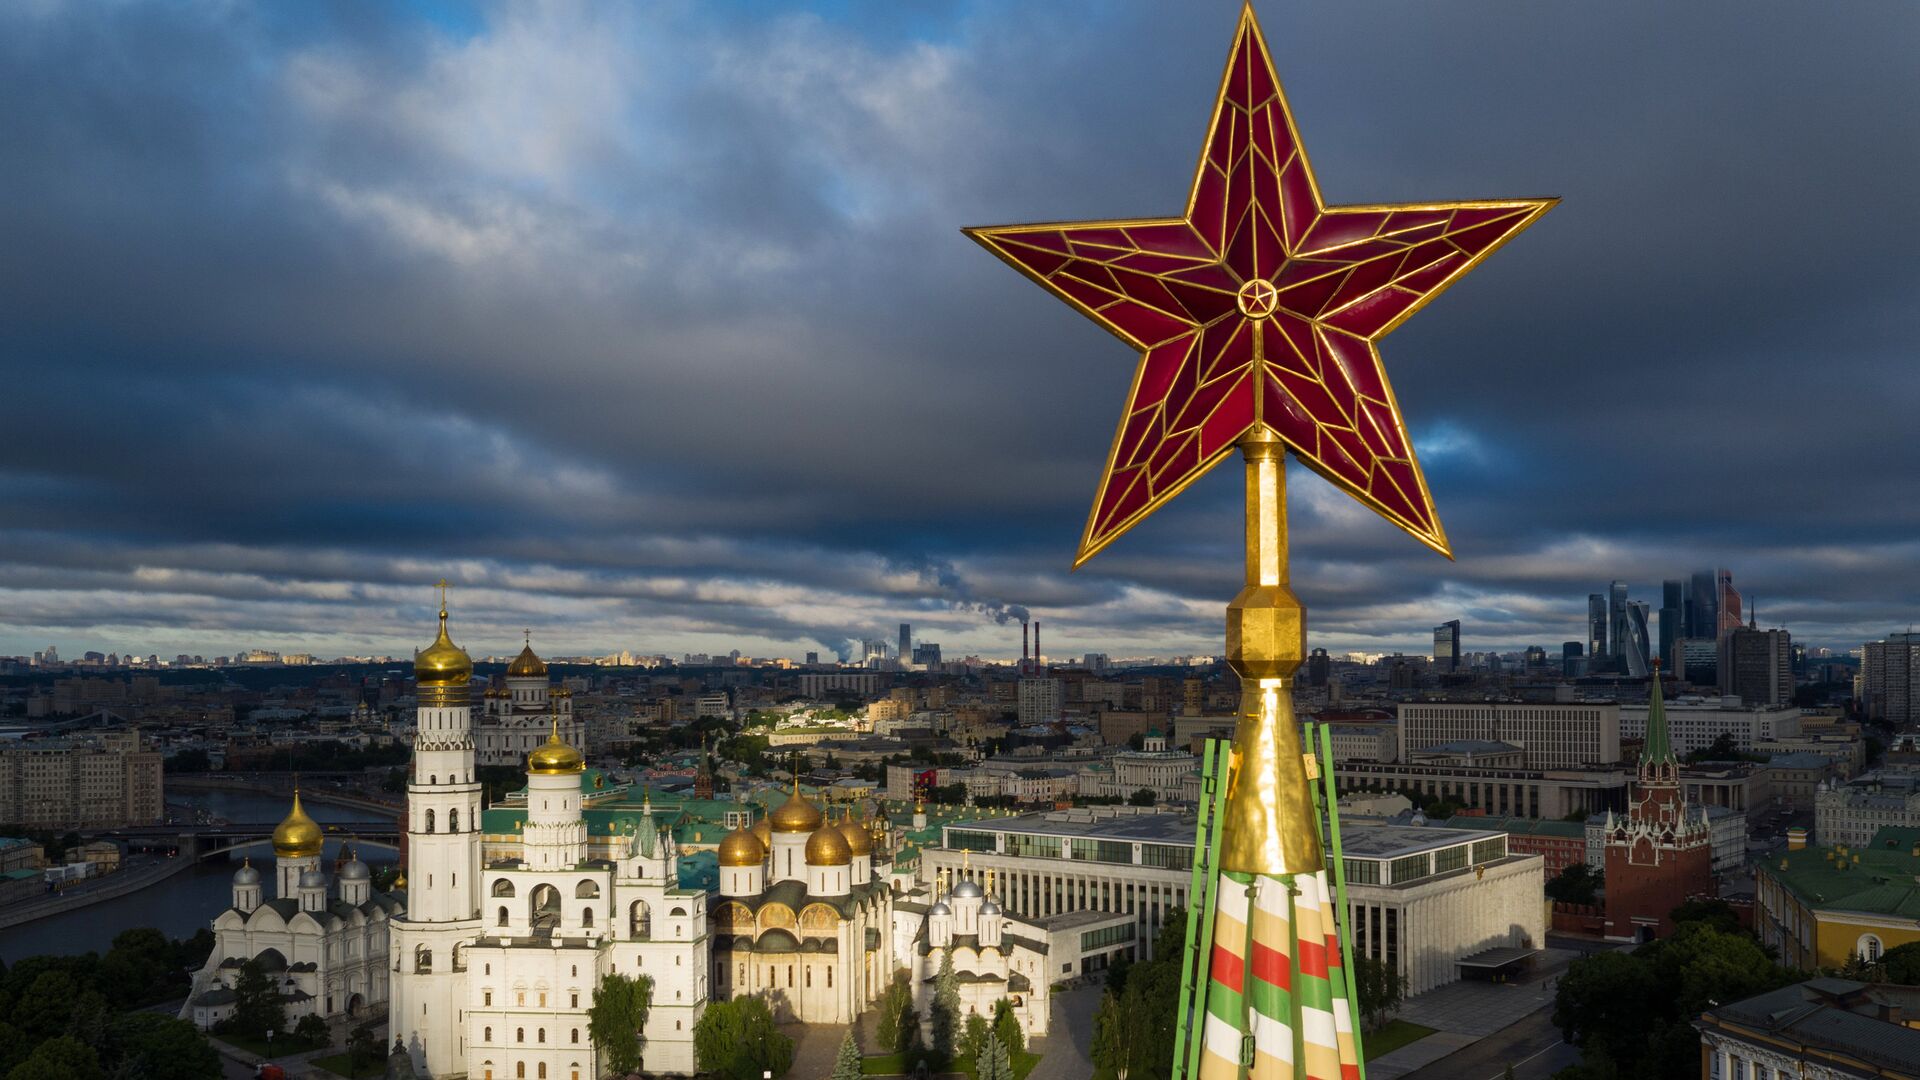 Звезда на Спасской башне Московского Кремля. - Sputnik Латвия, 1920, 22.06.2021